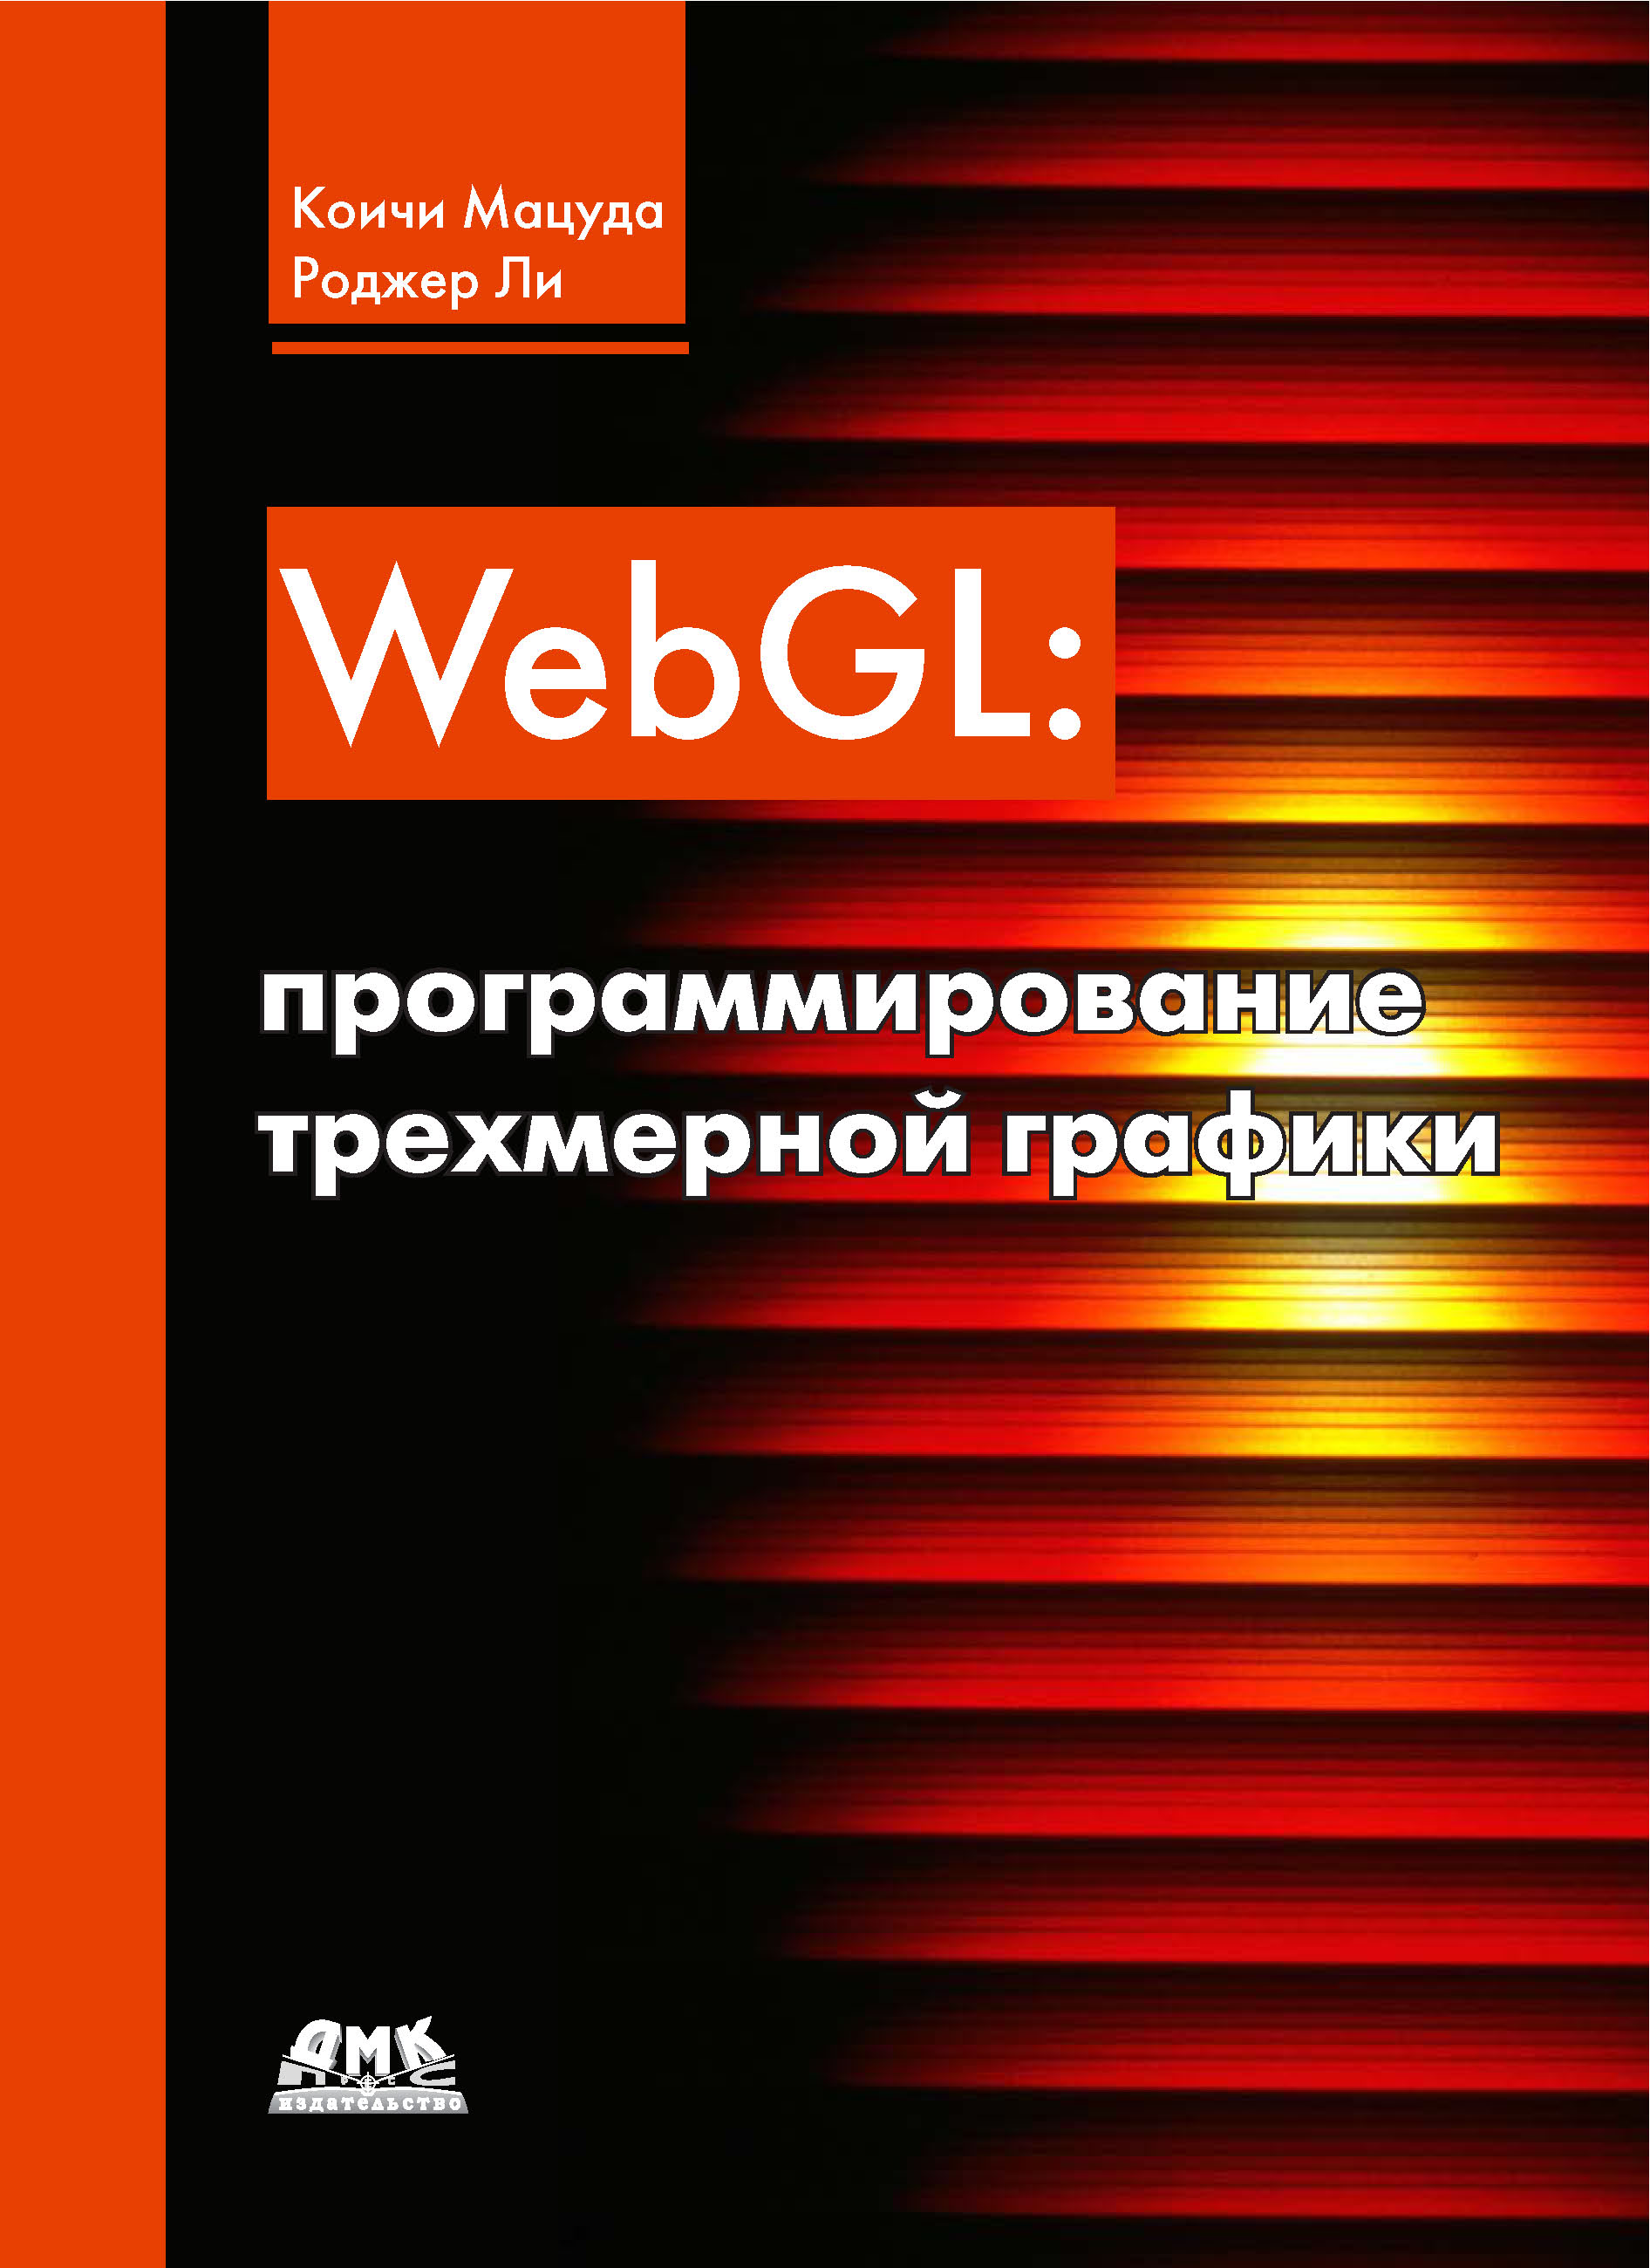 Книга  WebGL: программирование трехмерной графики созданная Коичи Мацуда, Роджер Ли, Александр Киселев может относится к жанру зарубежная компьютерная литература, интернет, программирование. Стоимость электронной книги WebGL: программирование трехмерной графики с идентификатором 10002663 составляет 639.00 руб.